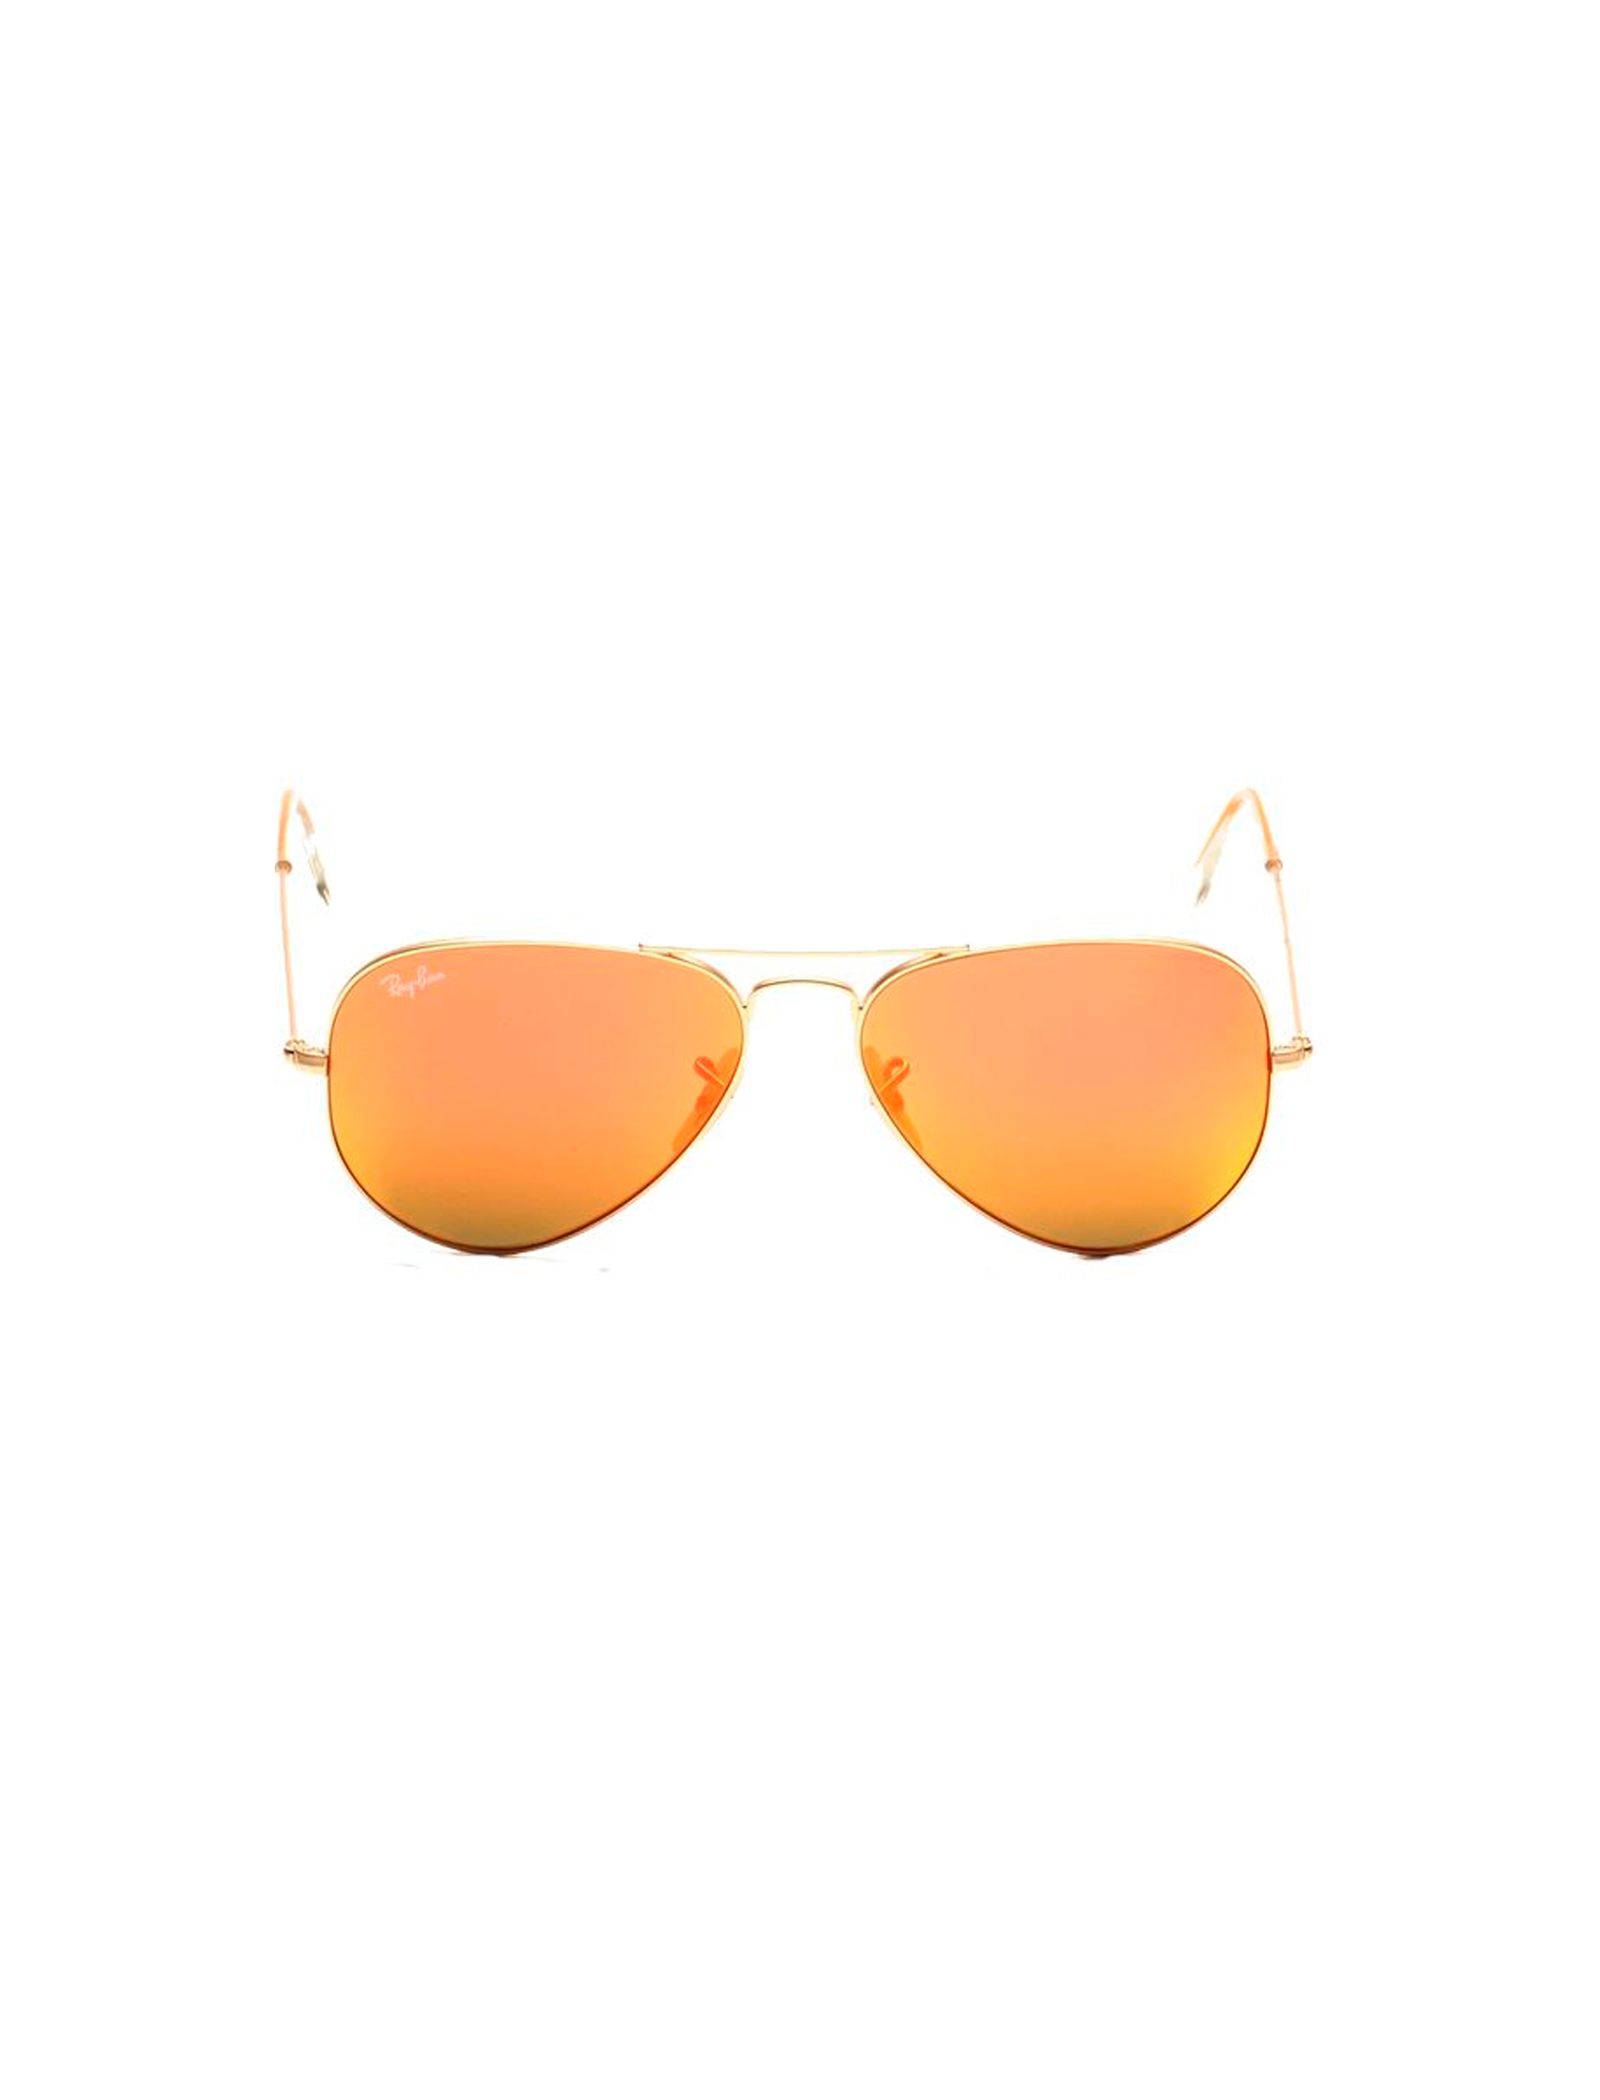 عینک آفتابی ری بن مدل 3025-112/69 - طلایی - 2